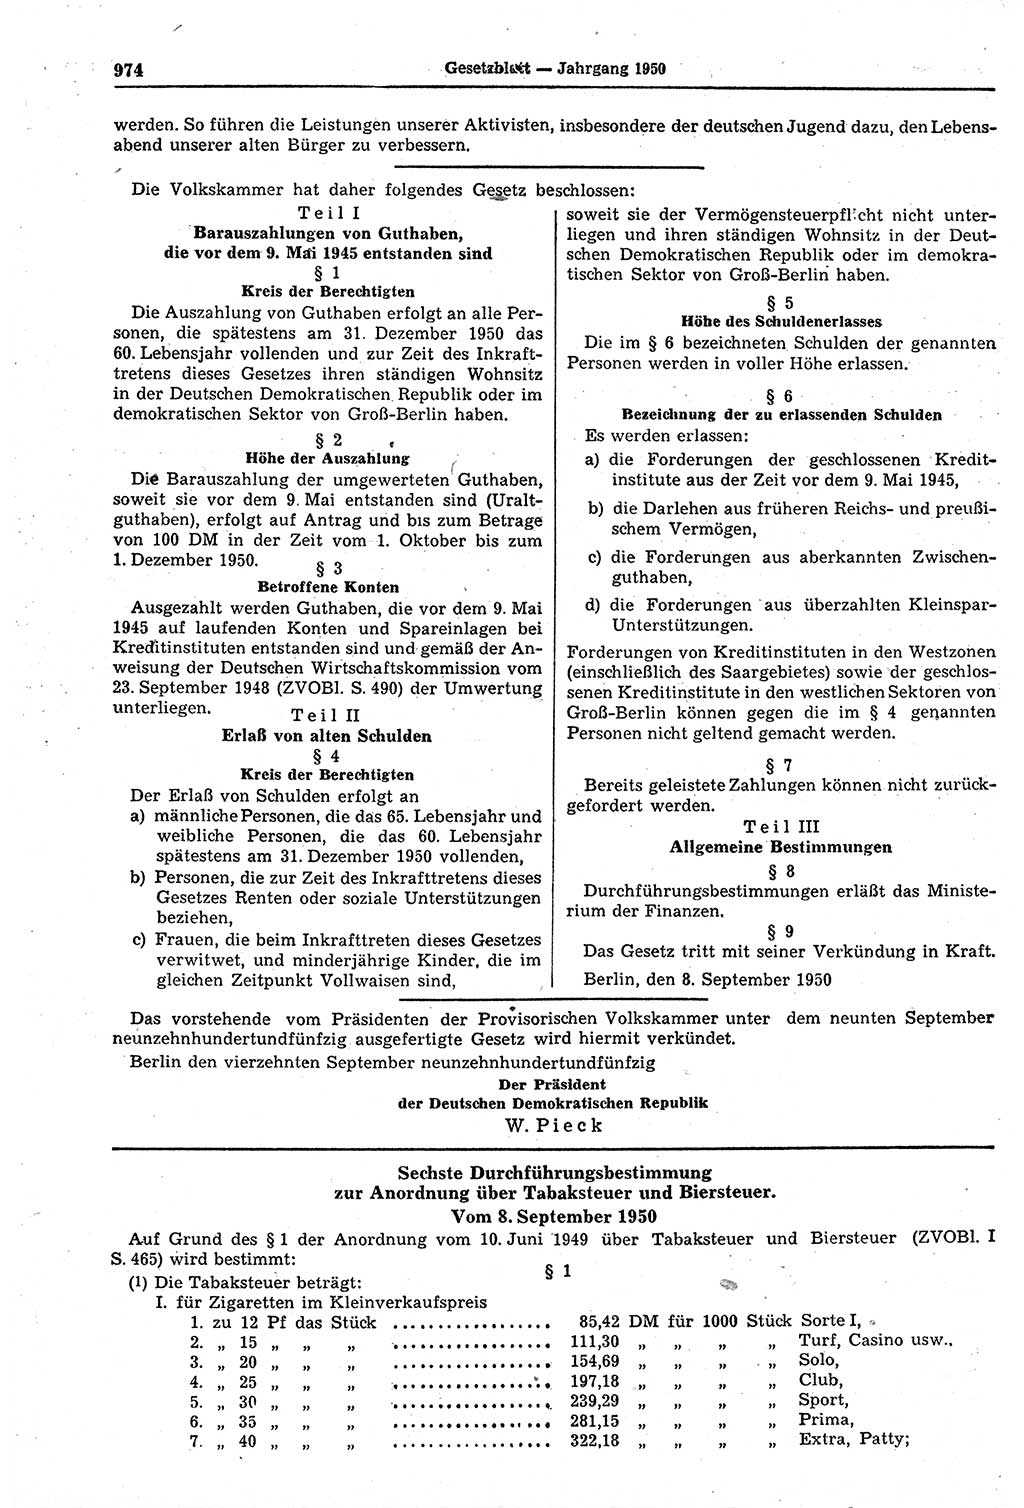 Gesetzblatt (GBl.) der Deutschen Demokratischen Republik (DDR) 1950, Seite 974 (GBl. DDR 1950, S. 974)